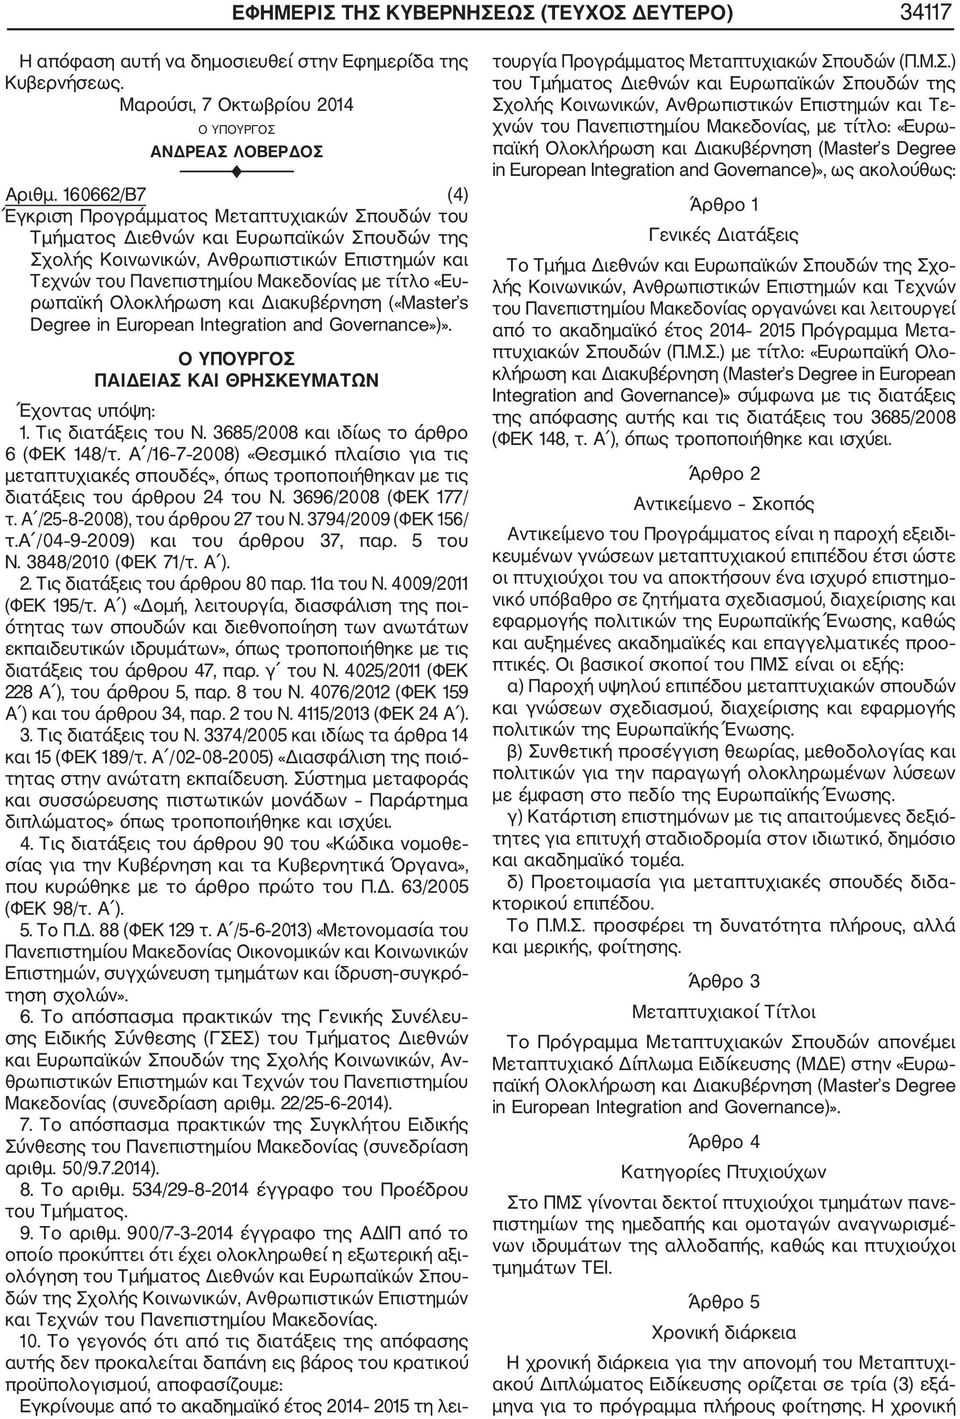 ρωπαϊκή Ολοκλήρωση και Διακυβέρνηση («Master s Degree in uropean Integration and Governance»)». 1. Τις διατάξεις του Ν. 385/2008 και ιδίως το άρθρο (ΦΕΚ 148/τ.